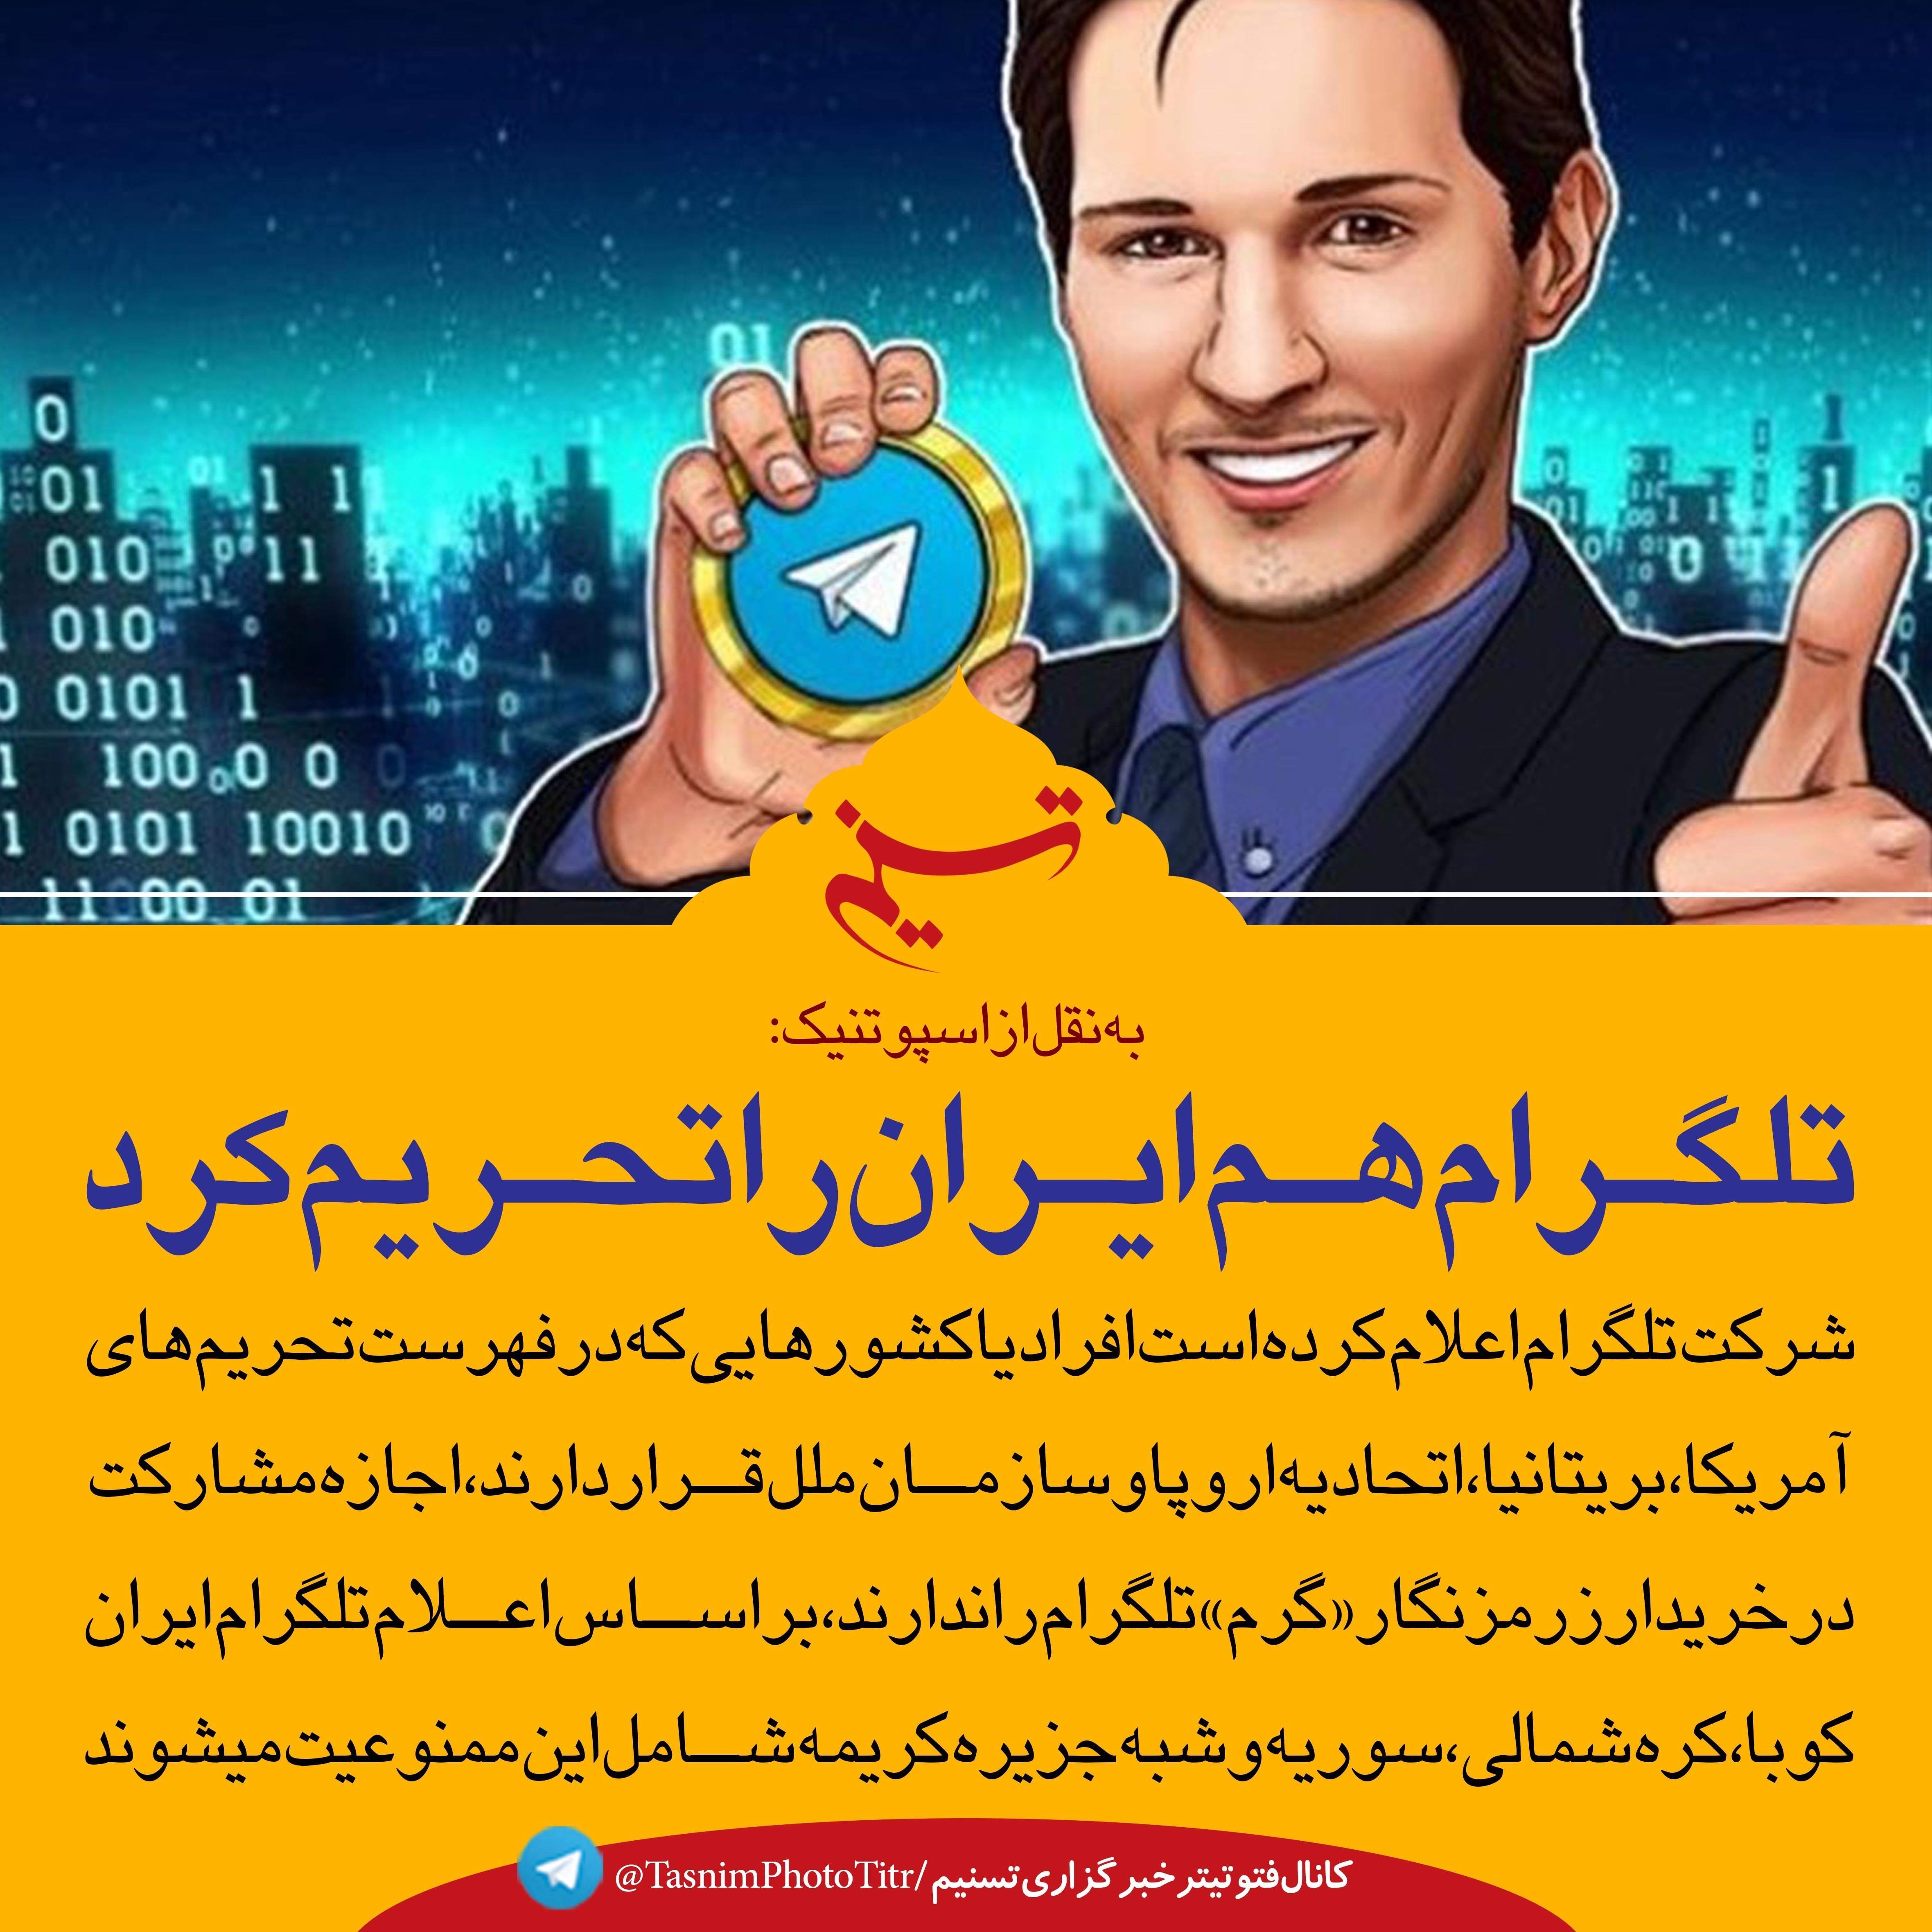 فتوتیتر|تلگرام هم ایران را تحریم کرد- اخبار رسانه ها تسنیم | Tasnim